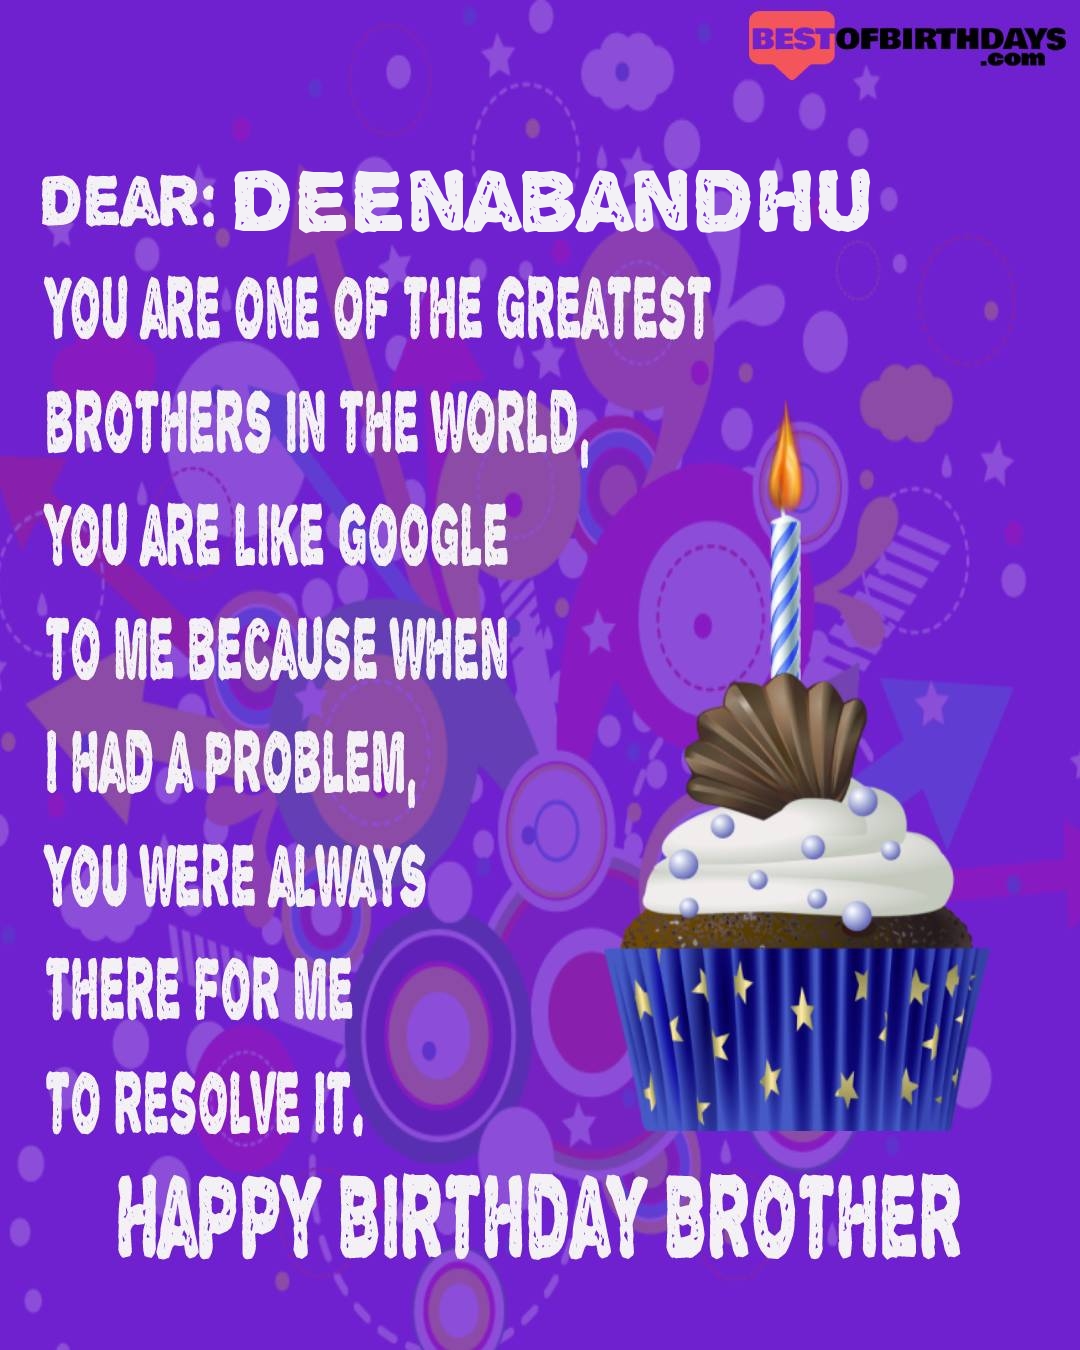 Happy birthday deenabandhu bhai brother bro